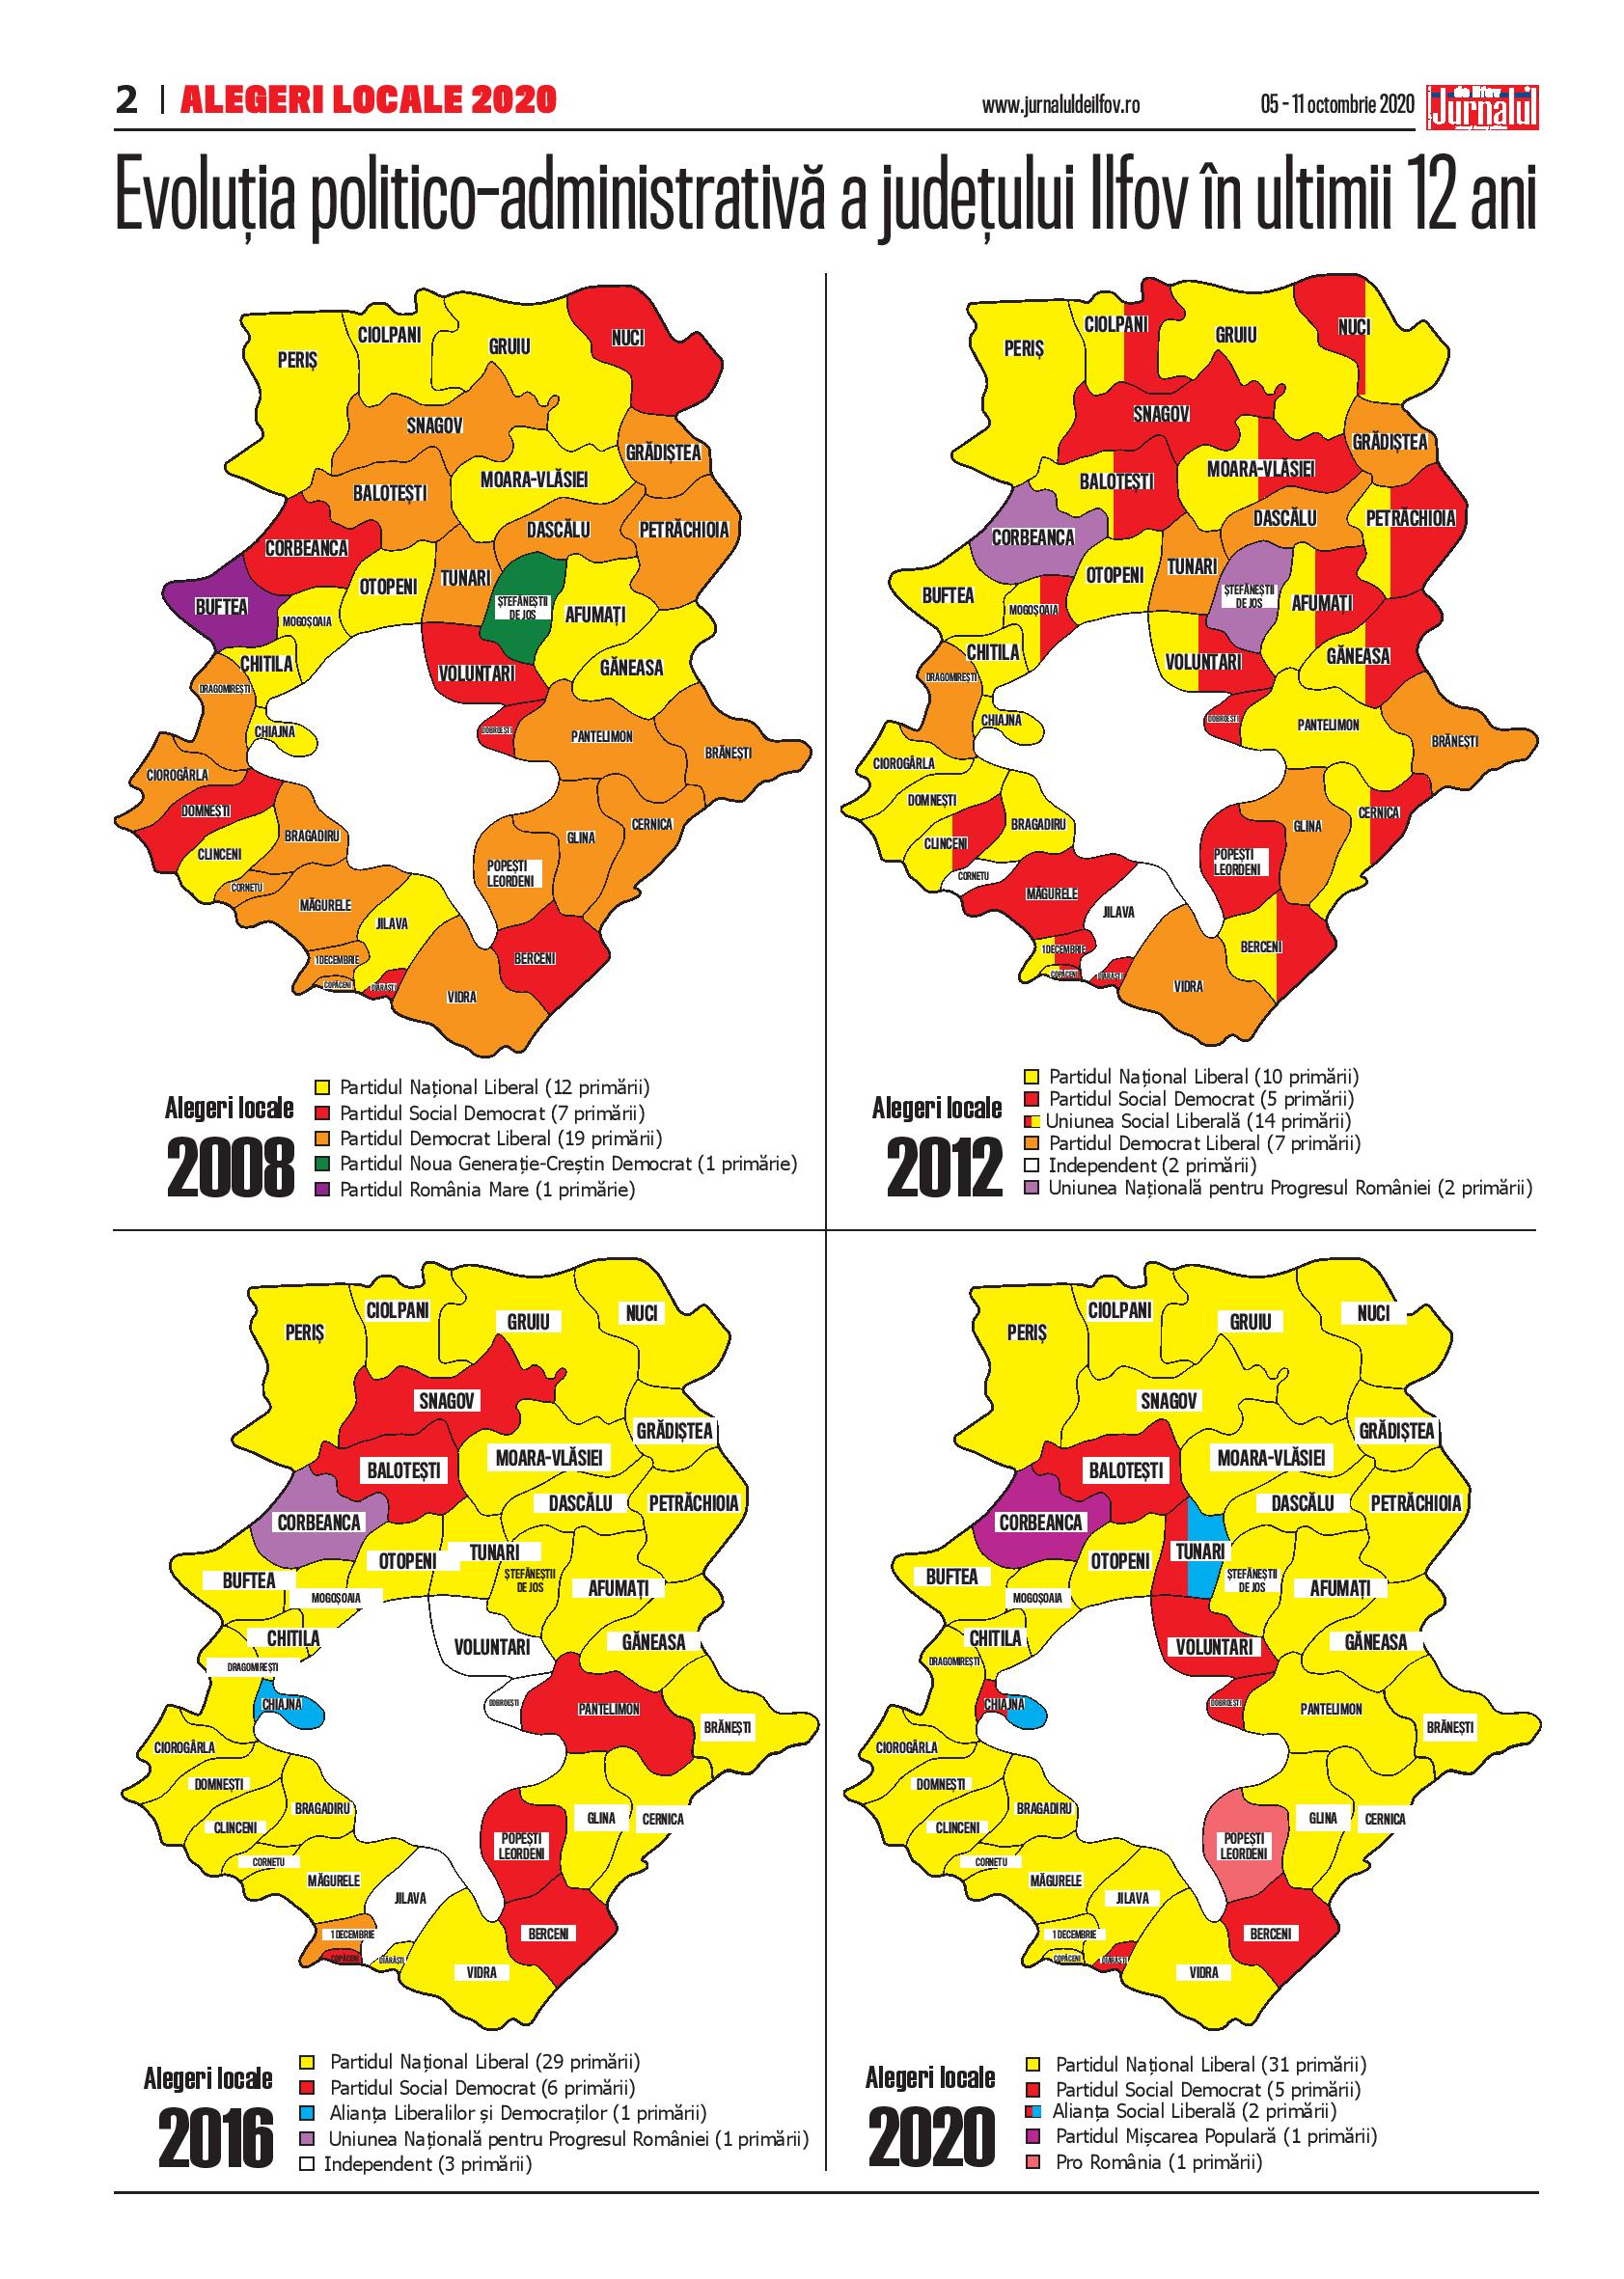 Evoluția politico-administrativă a județului Ilfov în ultimii 12 ani – Jurnalul de Ilfov